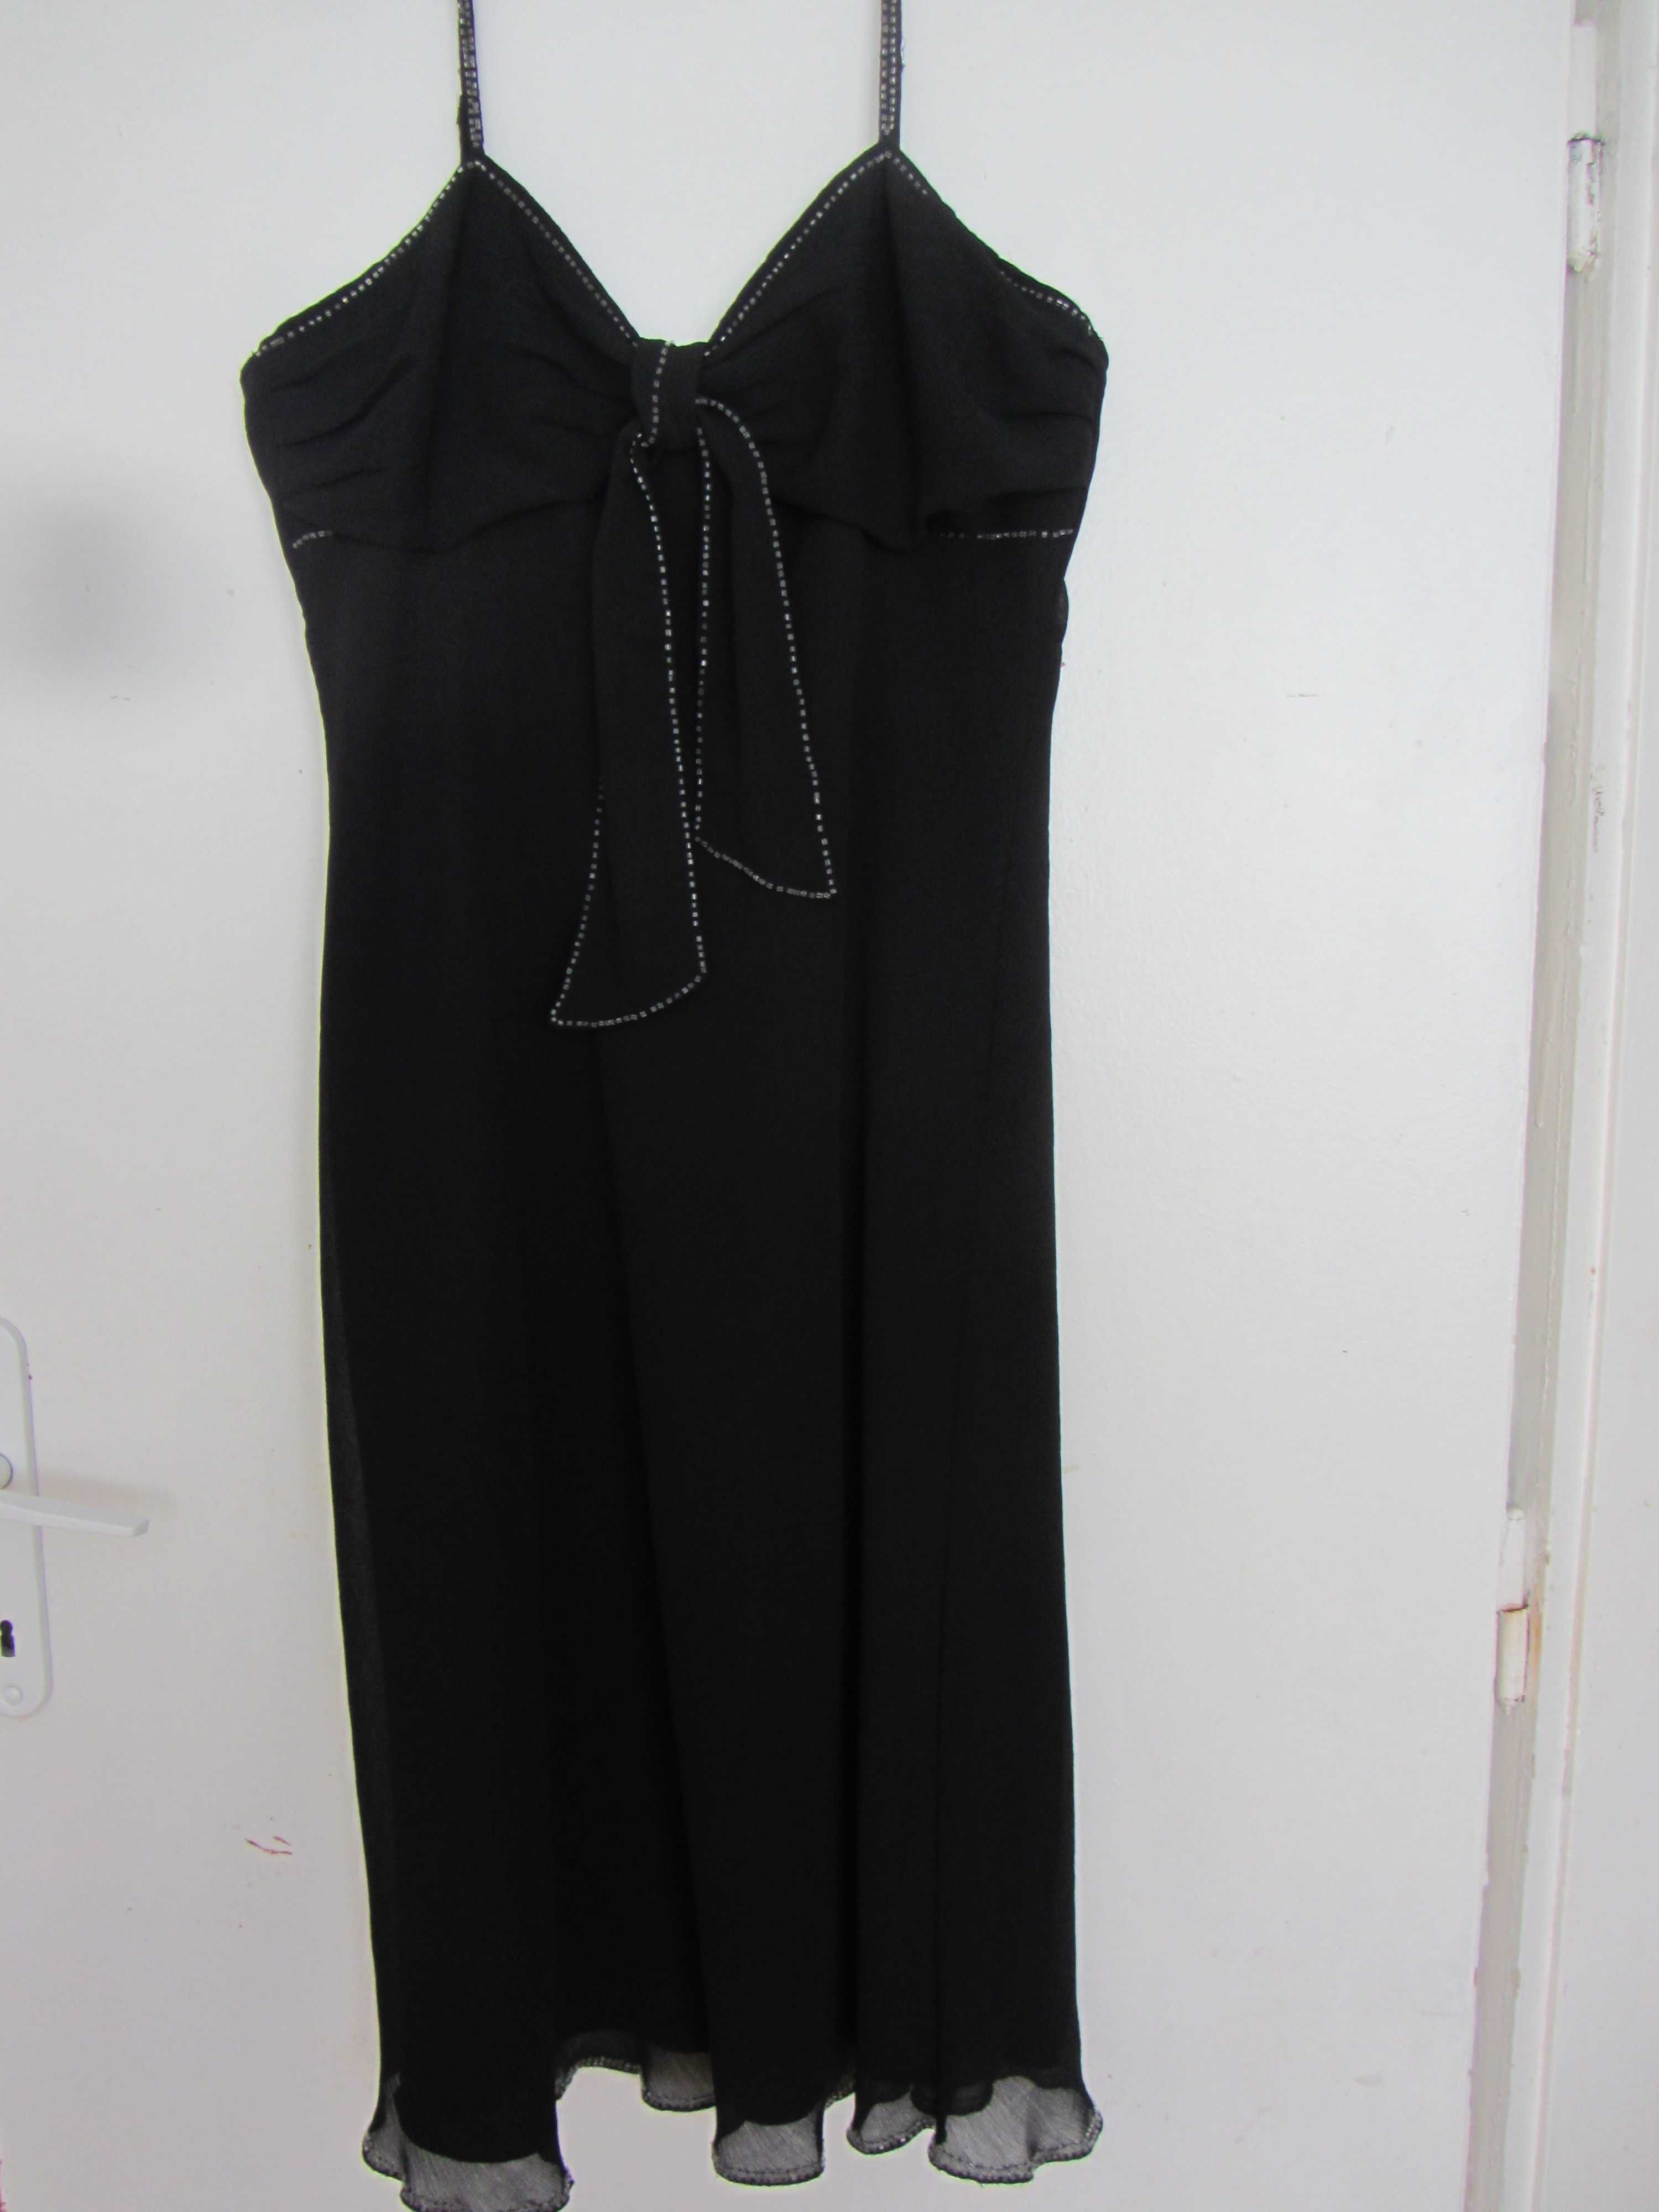 Дамска официална черна рокля с презрамки размер 44